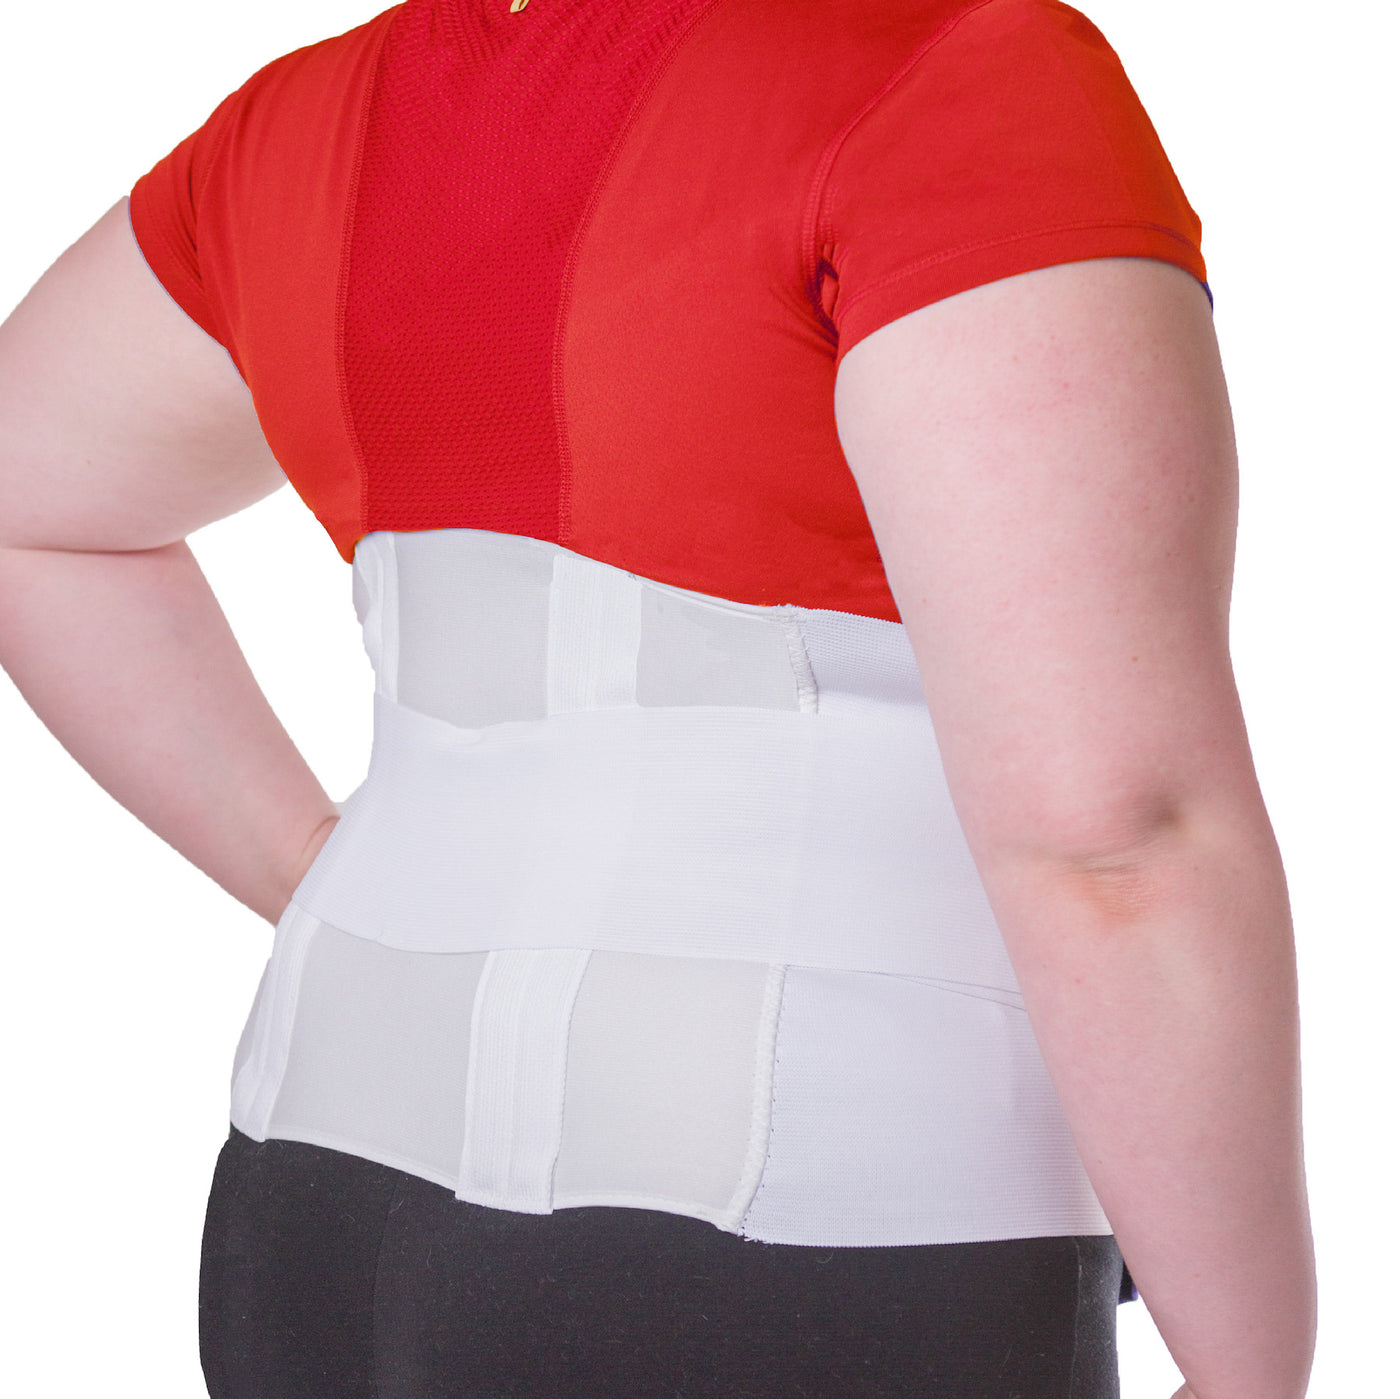 Herniated Back Support Girdle Lumbar Lower Waist Belt Brace Sciatica Pain  Relief